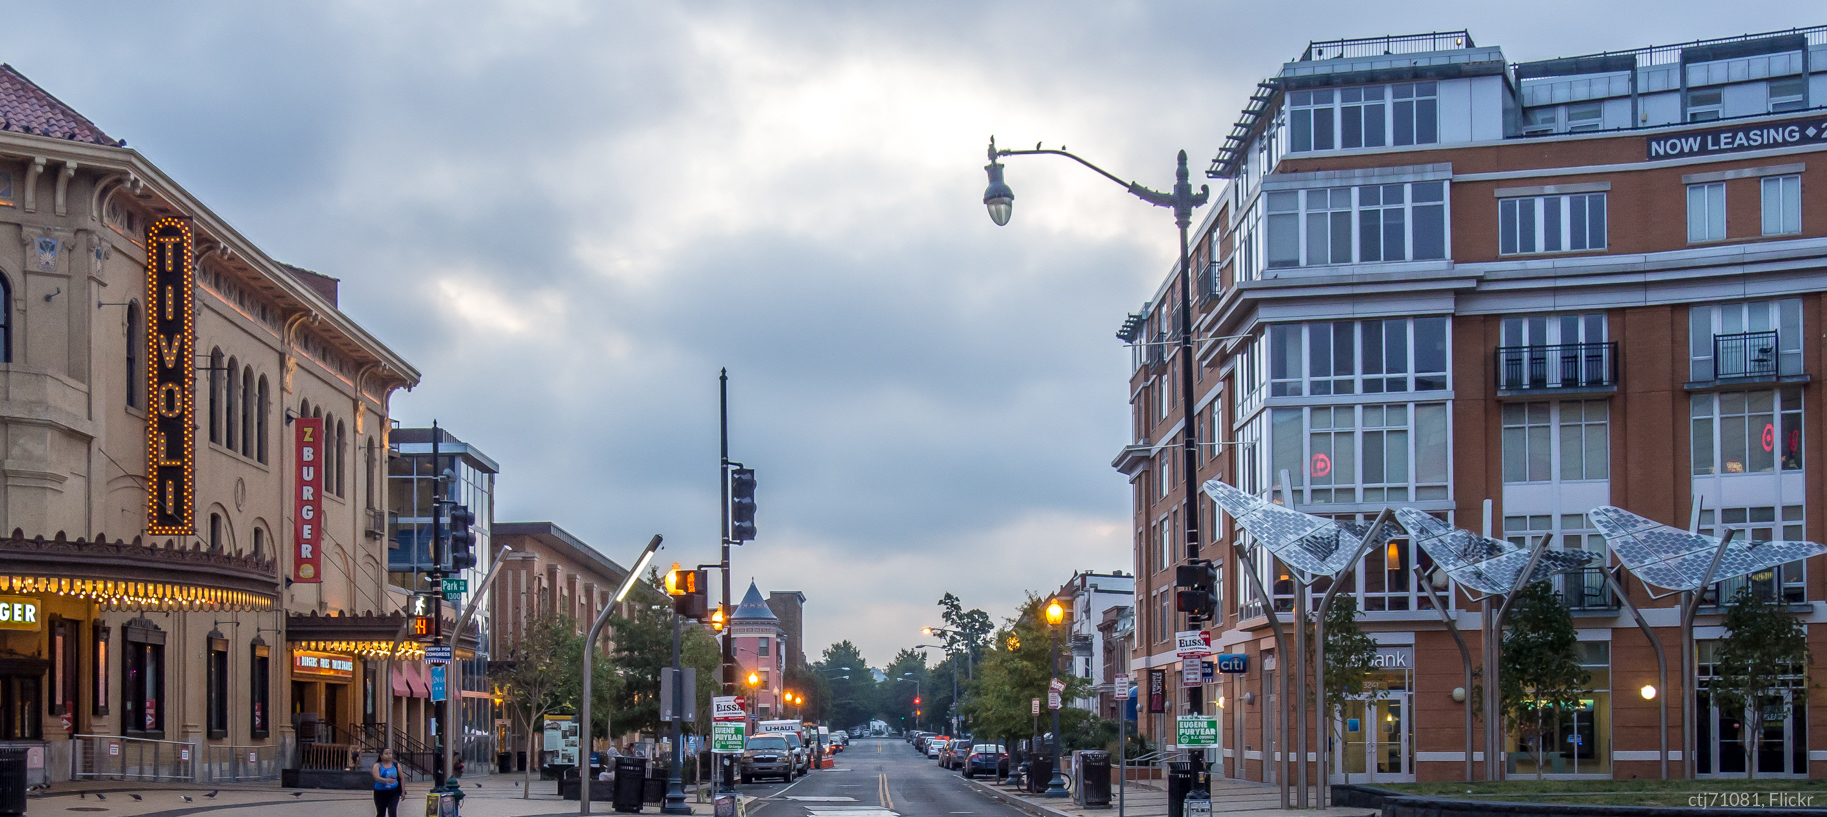 Create Walkable Neighborhoods: Bethesda Row, Bethesda, Maryland, Smart  Growth